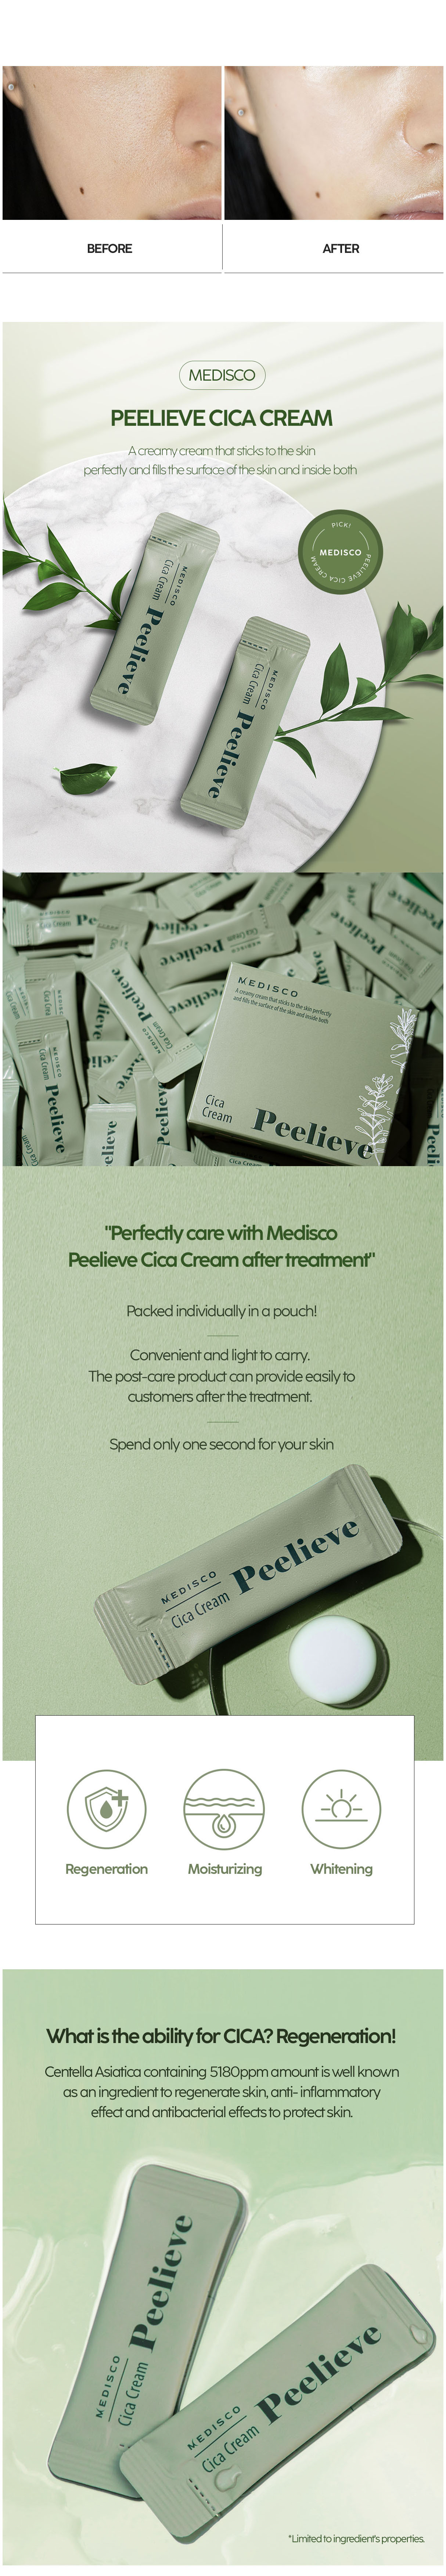 Medisco Peelieve Cica Cream 3